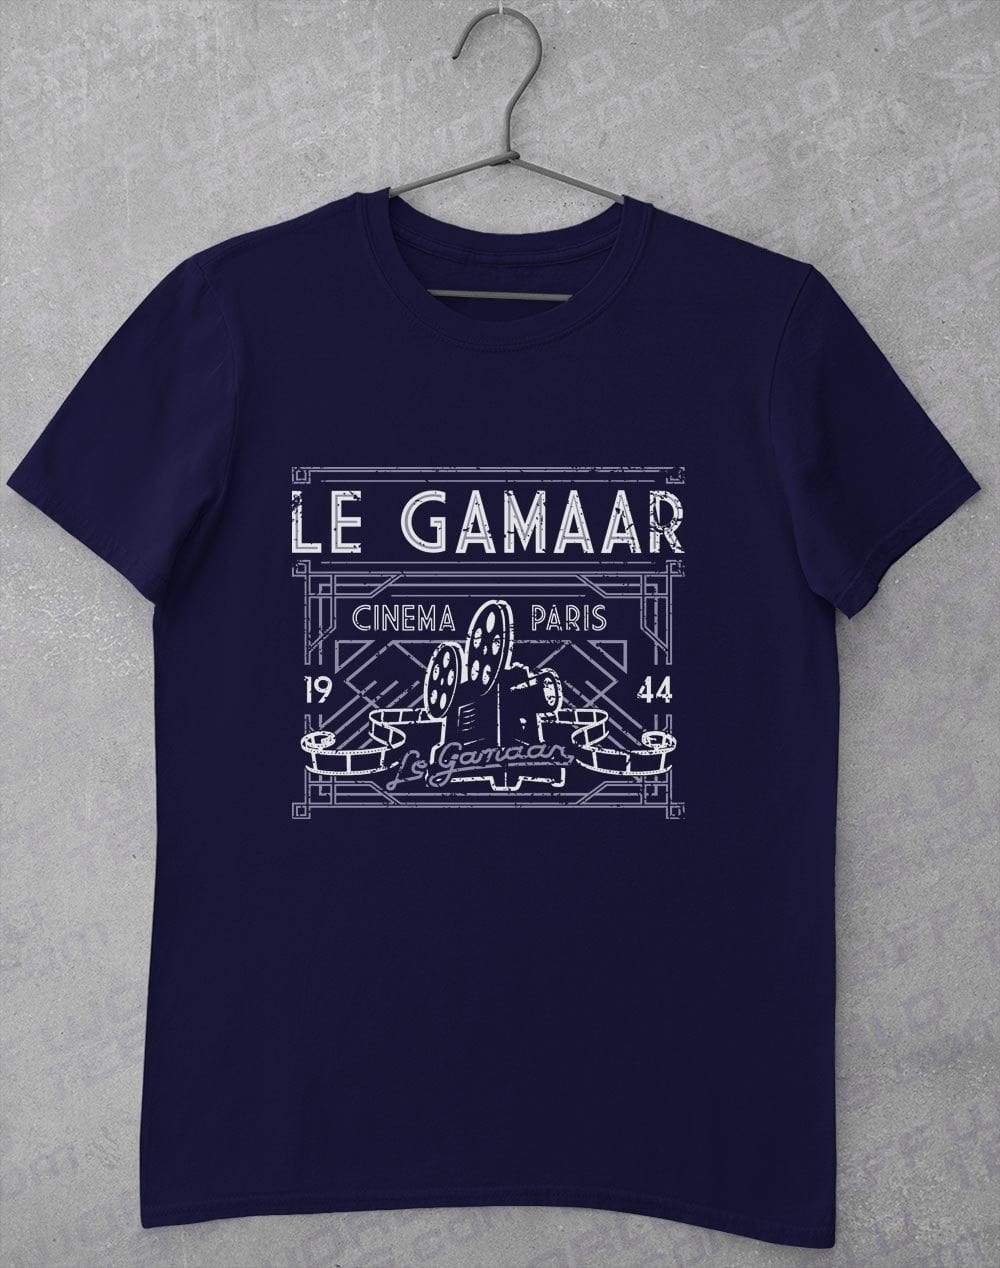 Le Gamaar Cinema T Shirt S / Navy  - Off World Tees